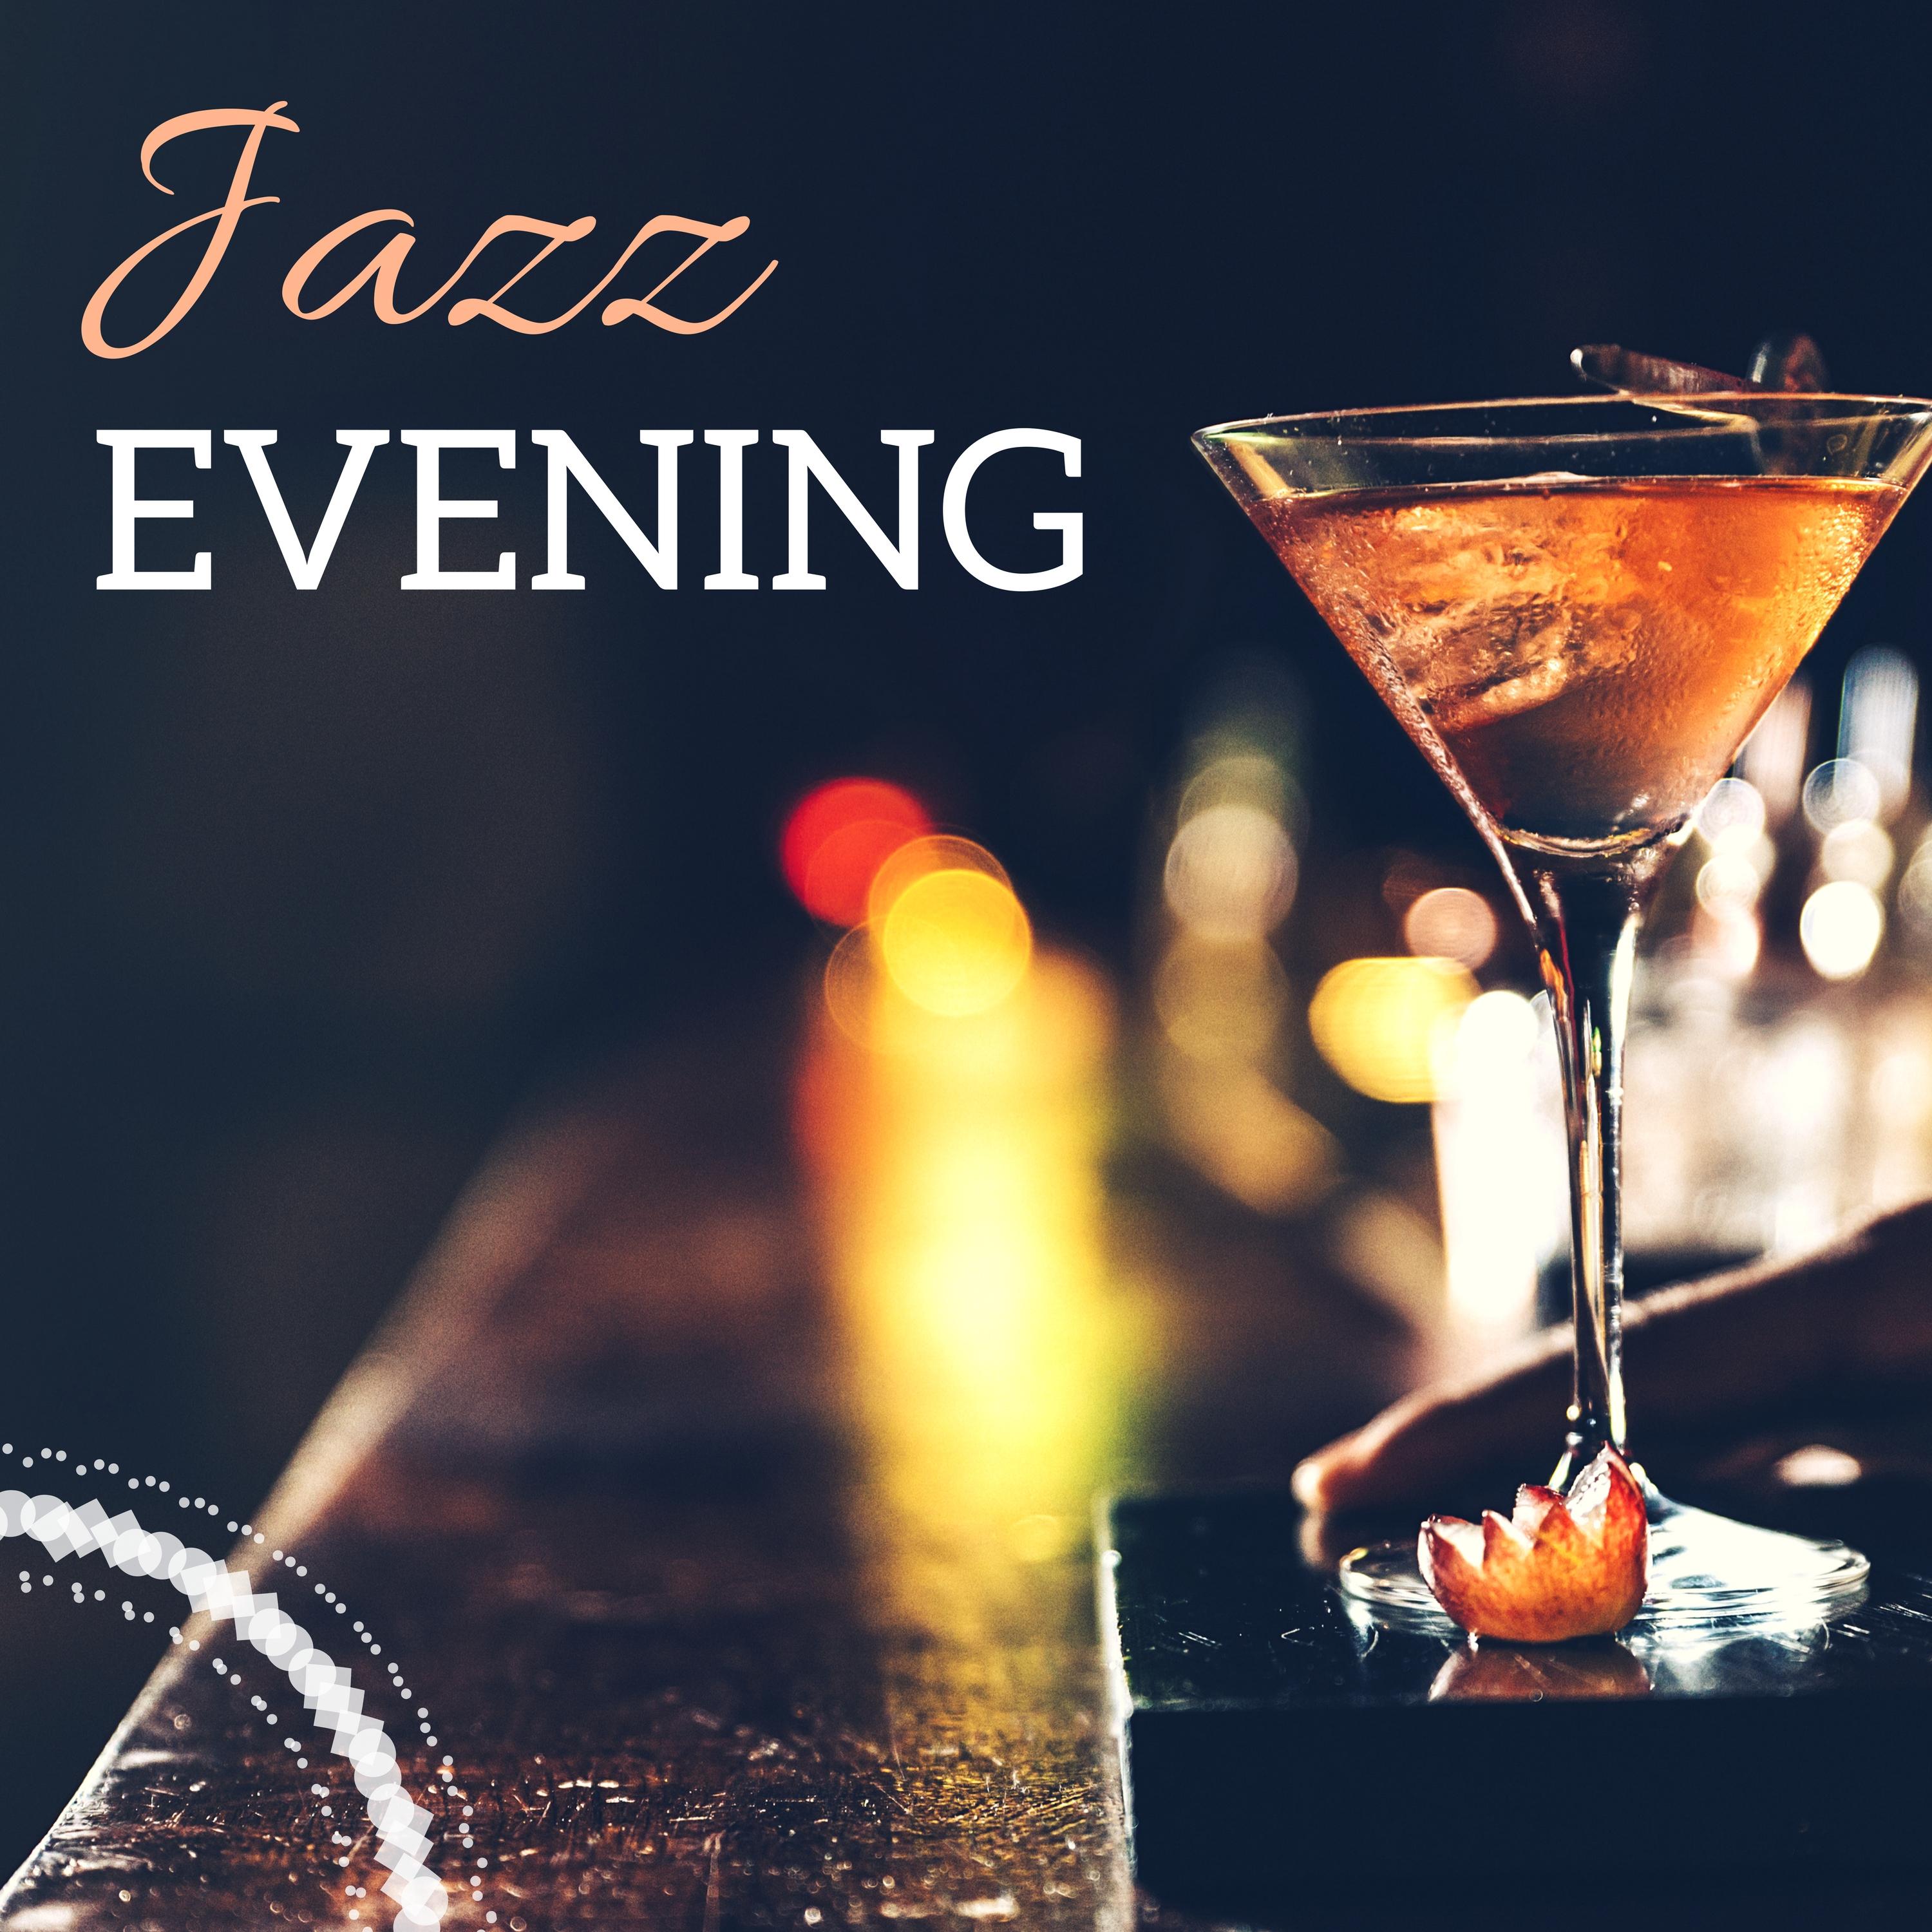 Jazz Evening - Instrumental Playlist & Bossanova Background for Jazz Club